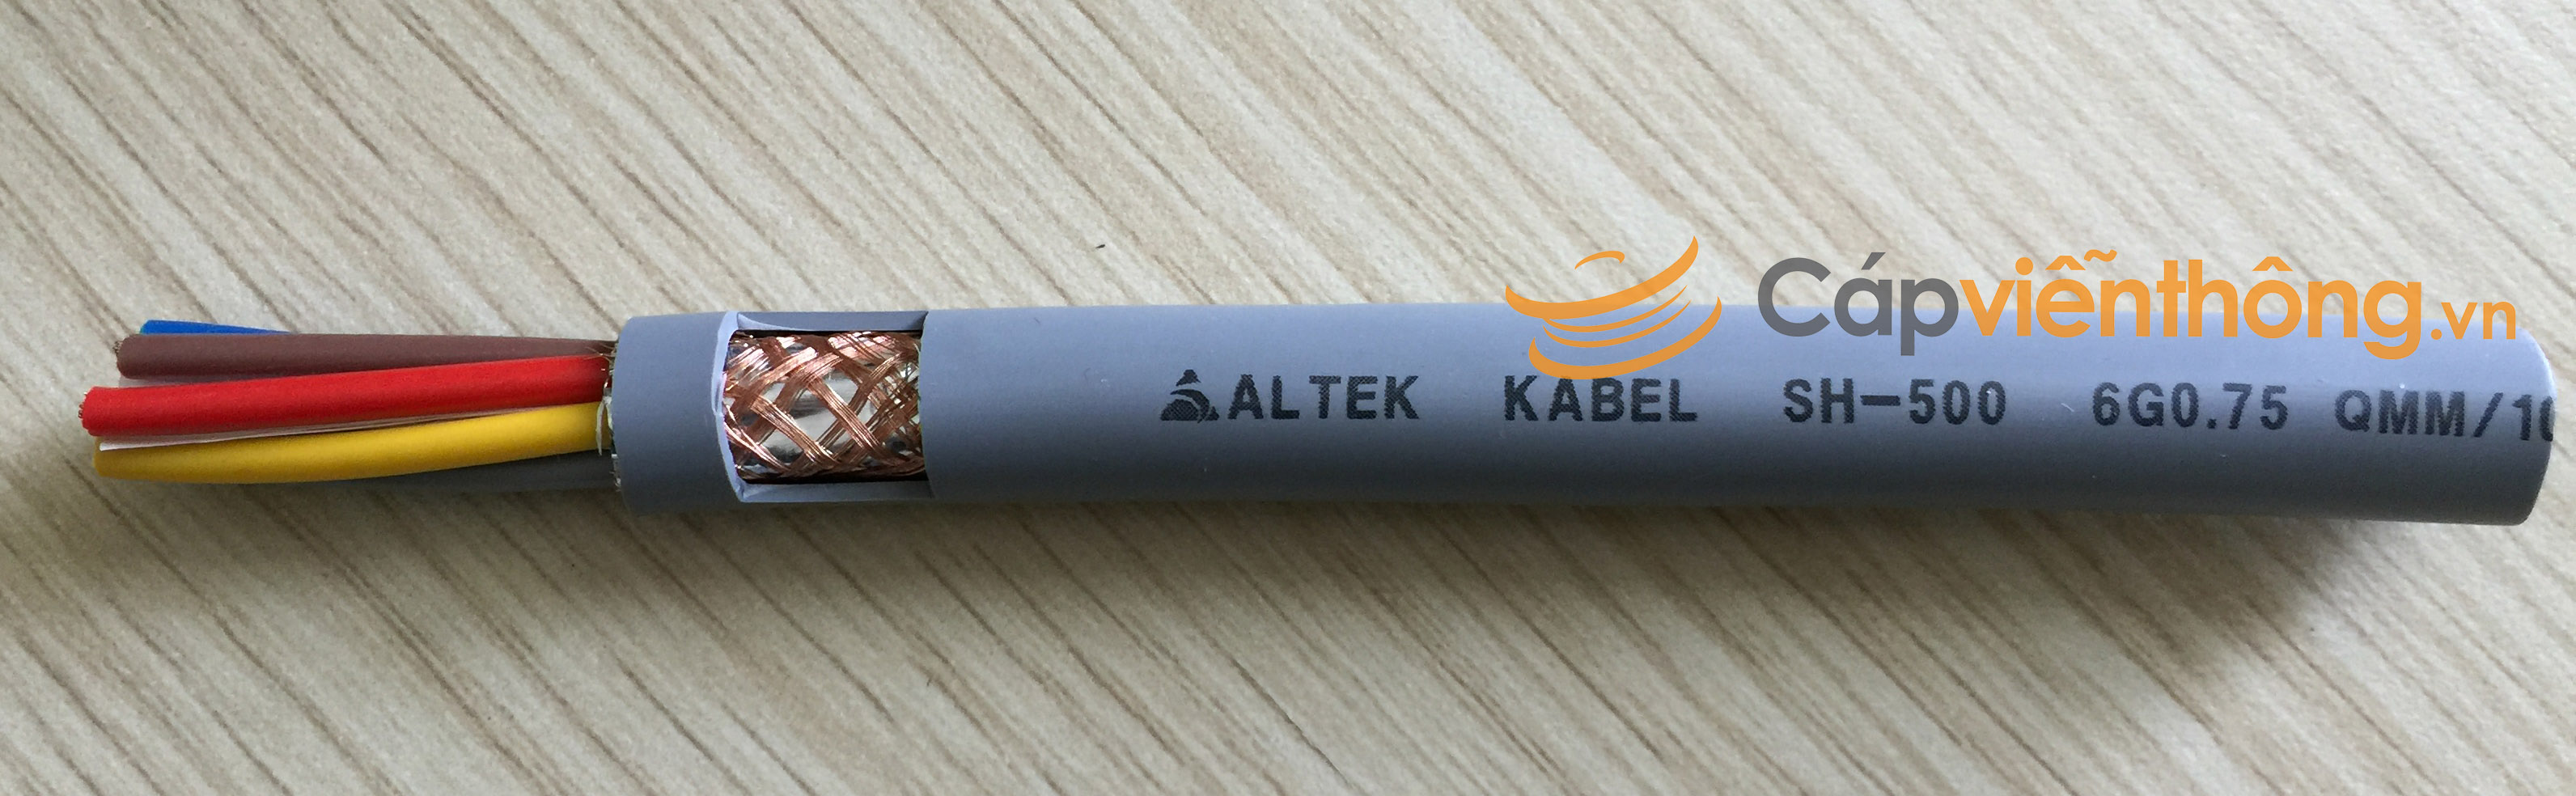 Cáp điều khiển có lưới Altek Kabel SH-500 6G 0.75QMM